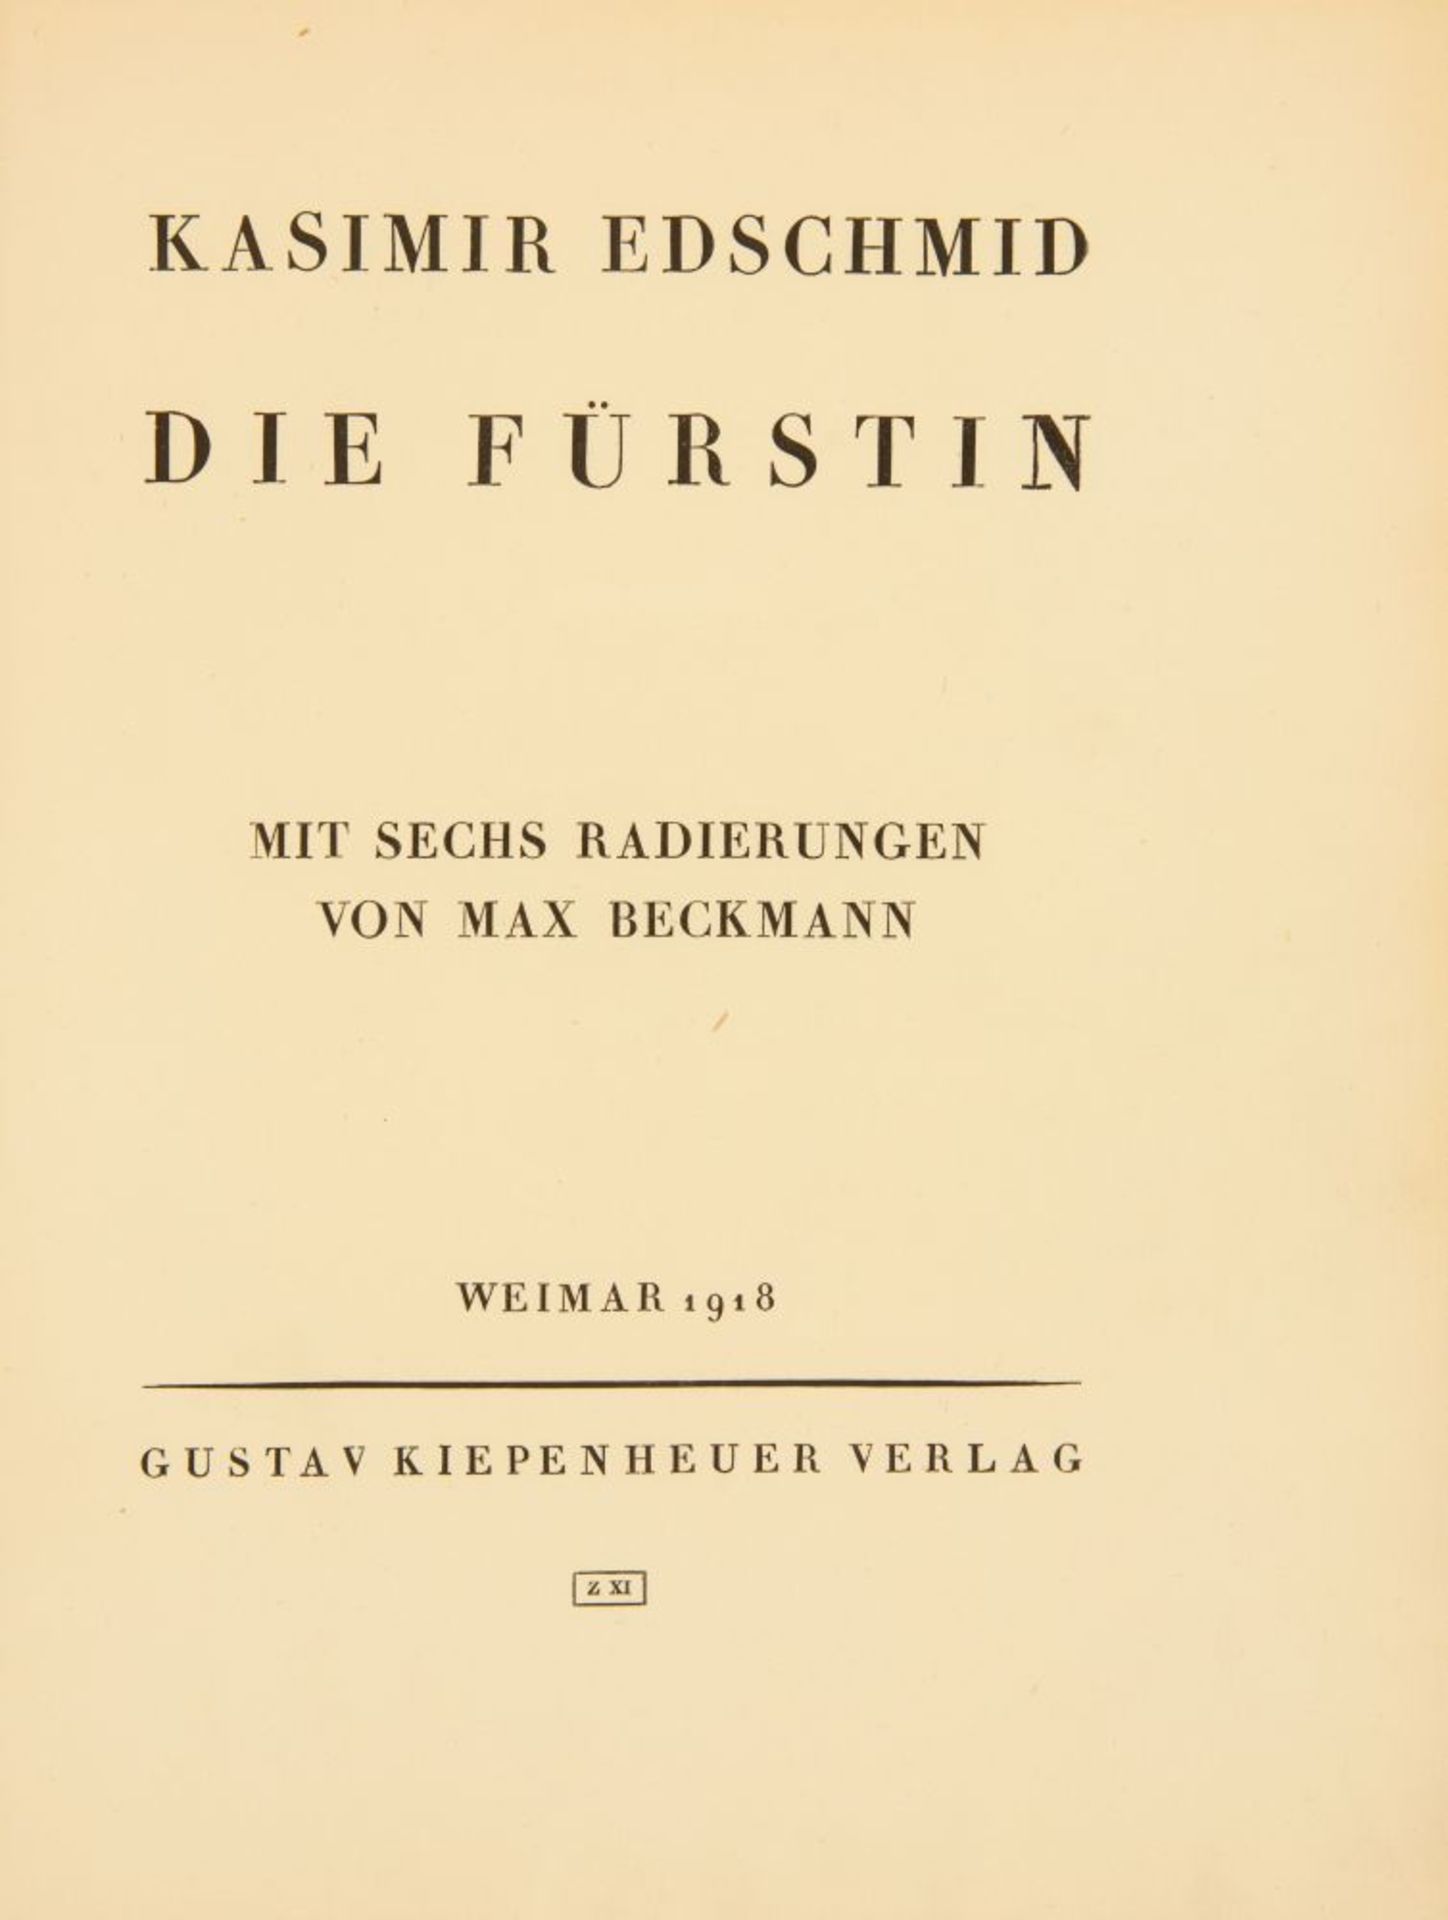 K. Edschmid / Max Beckmann, Die Fürstin. 1918. - Ex. 315/500. - Image 2 of 4